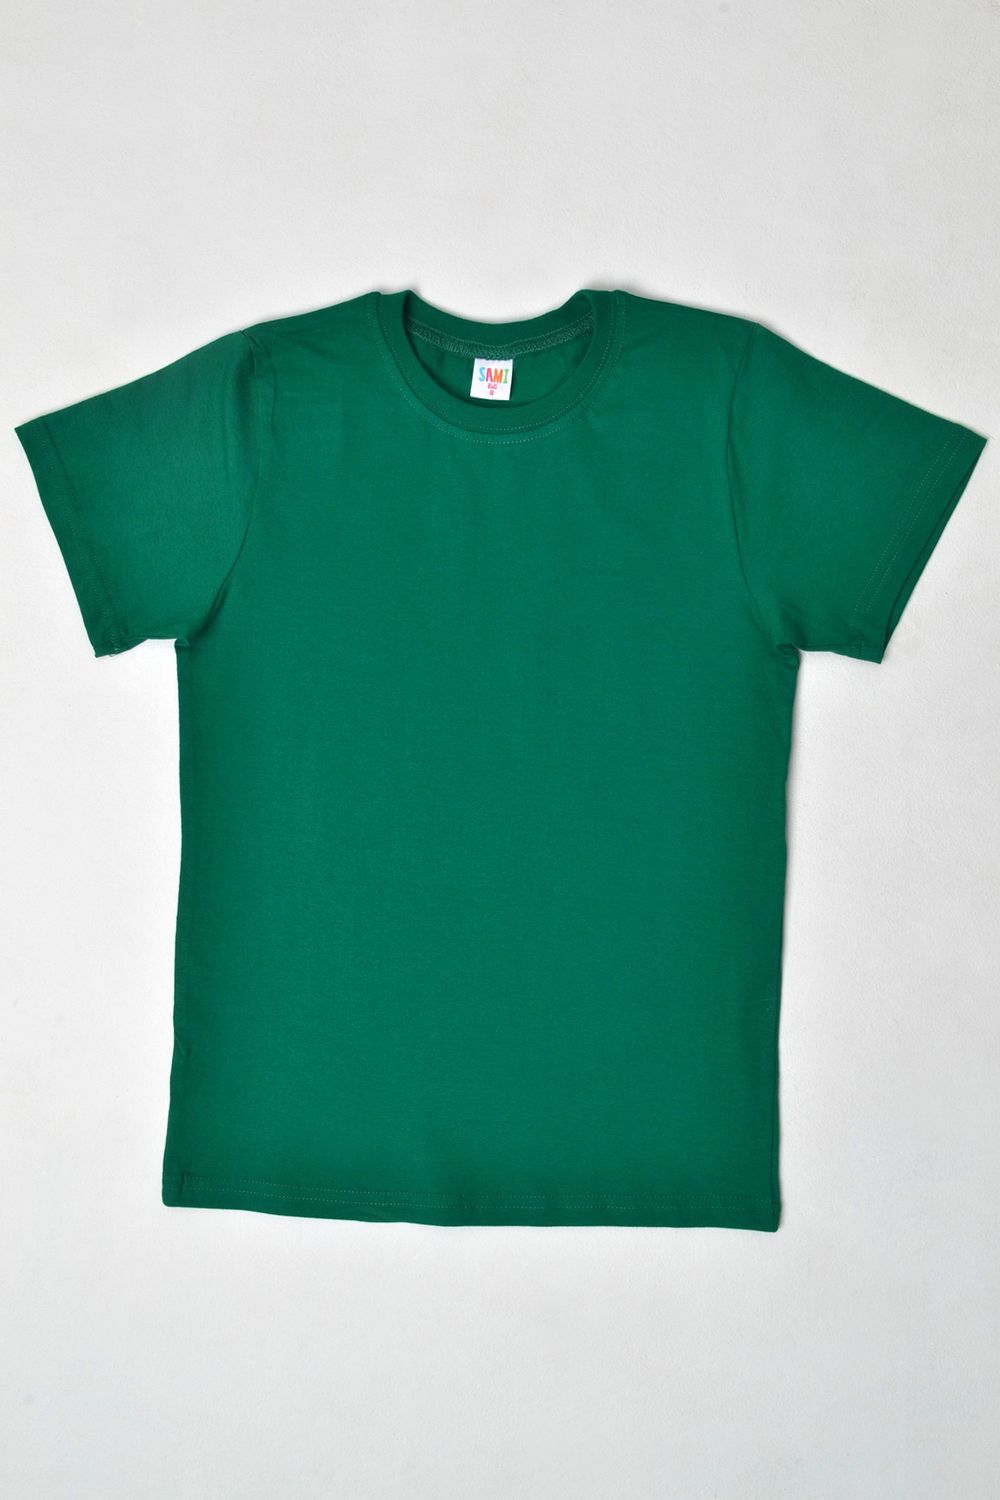 7452 футболка детская однотонная - зеленый